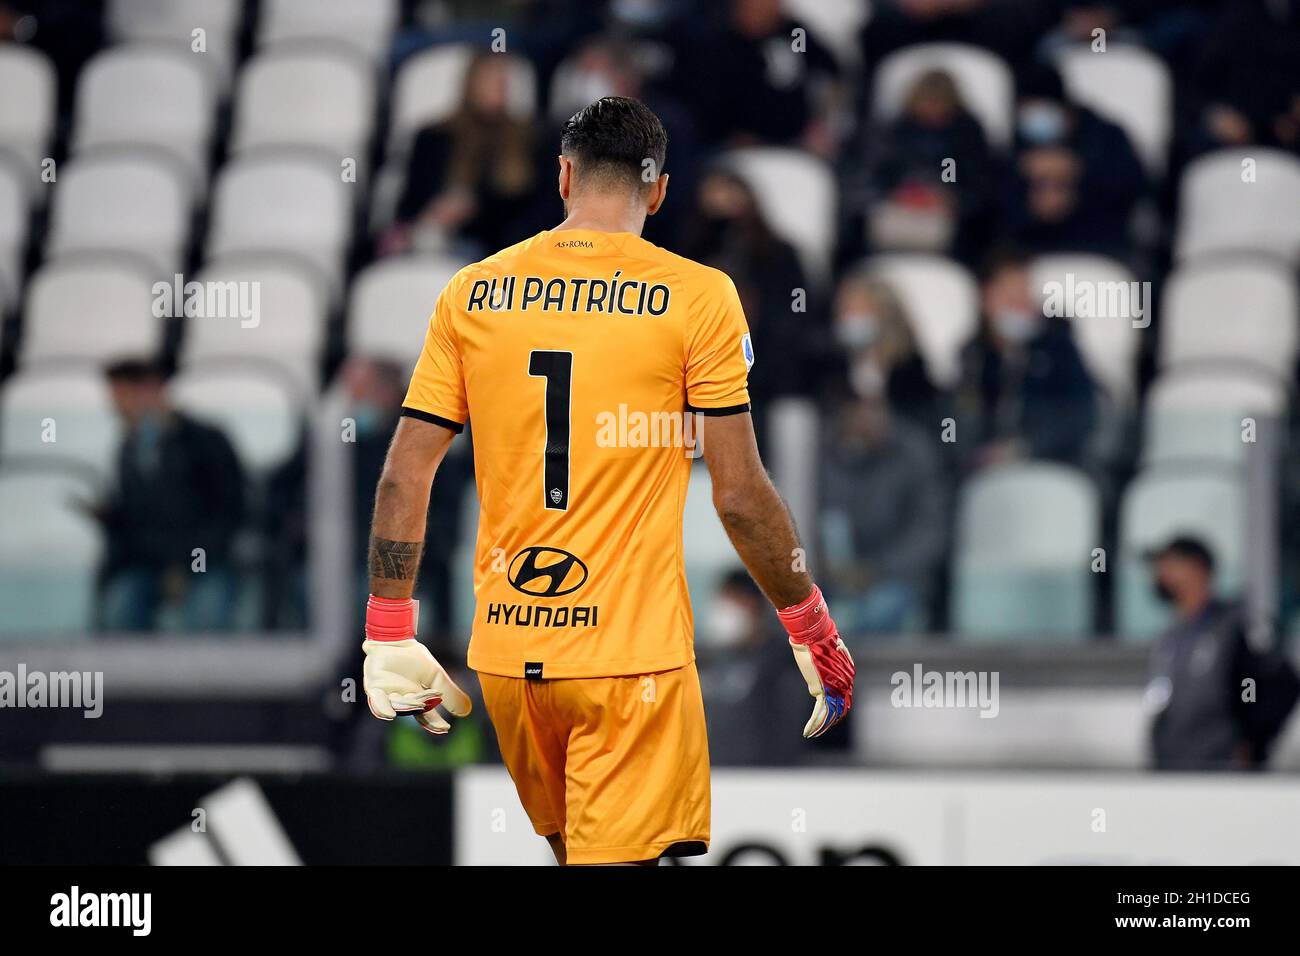 Rui Patricio de AS Roma en acción durante el partido Serie A 2021/22 entre  Juventus FC y AS Roma en el estadio Allianz el 17 de octubre de 2021 en  Turín, It